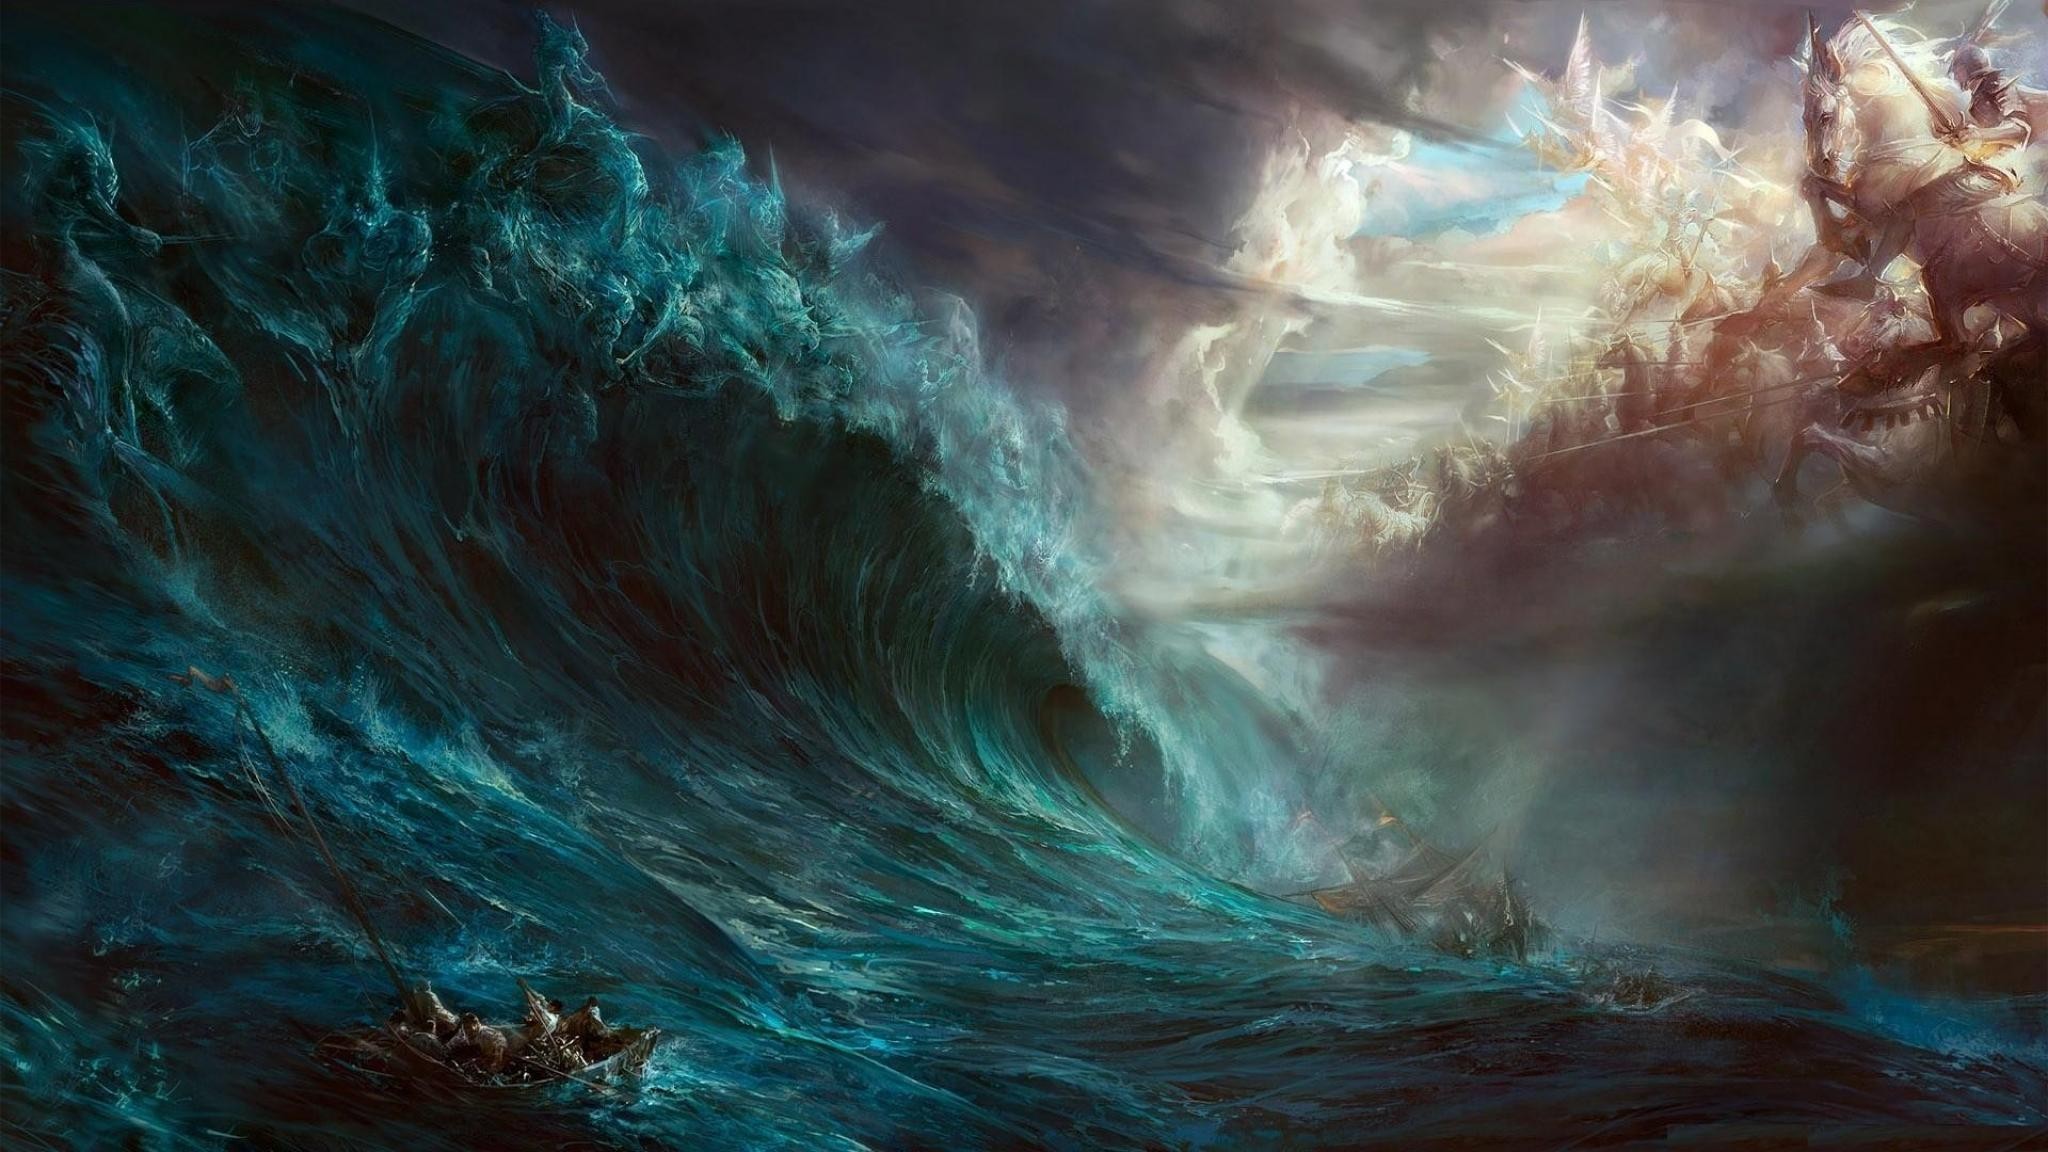 2048x1152 General  fantasy art digital art artwork Cronus Zeus sea storm  ship war God Devil